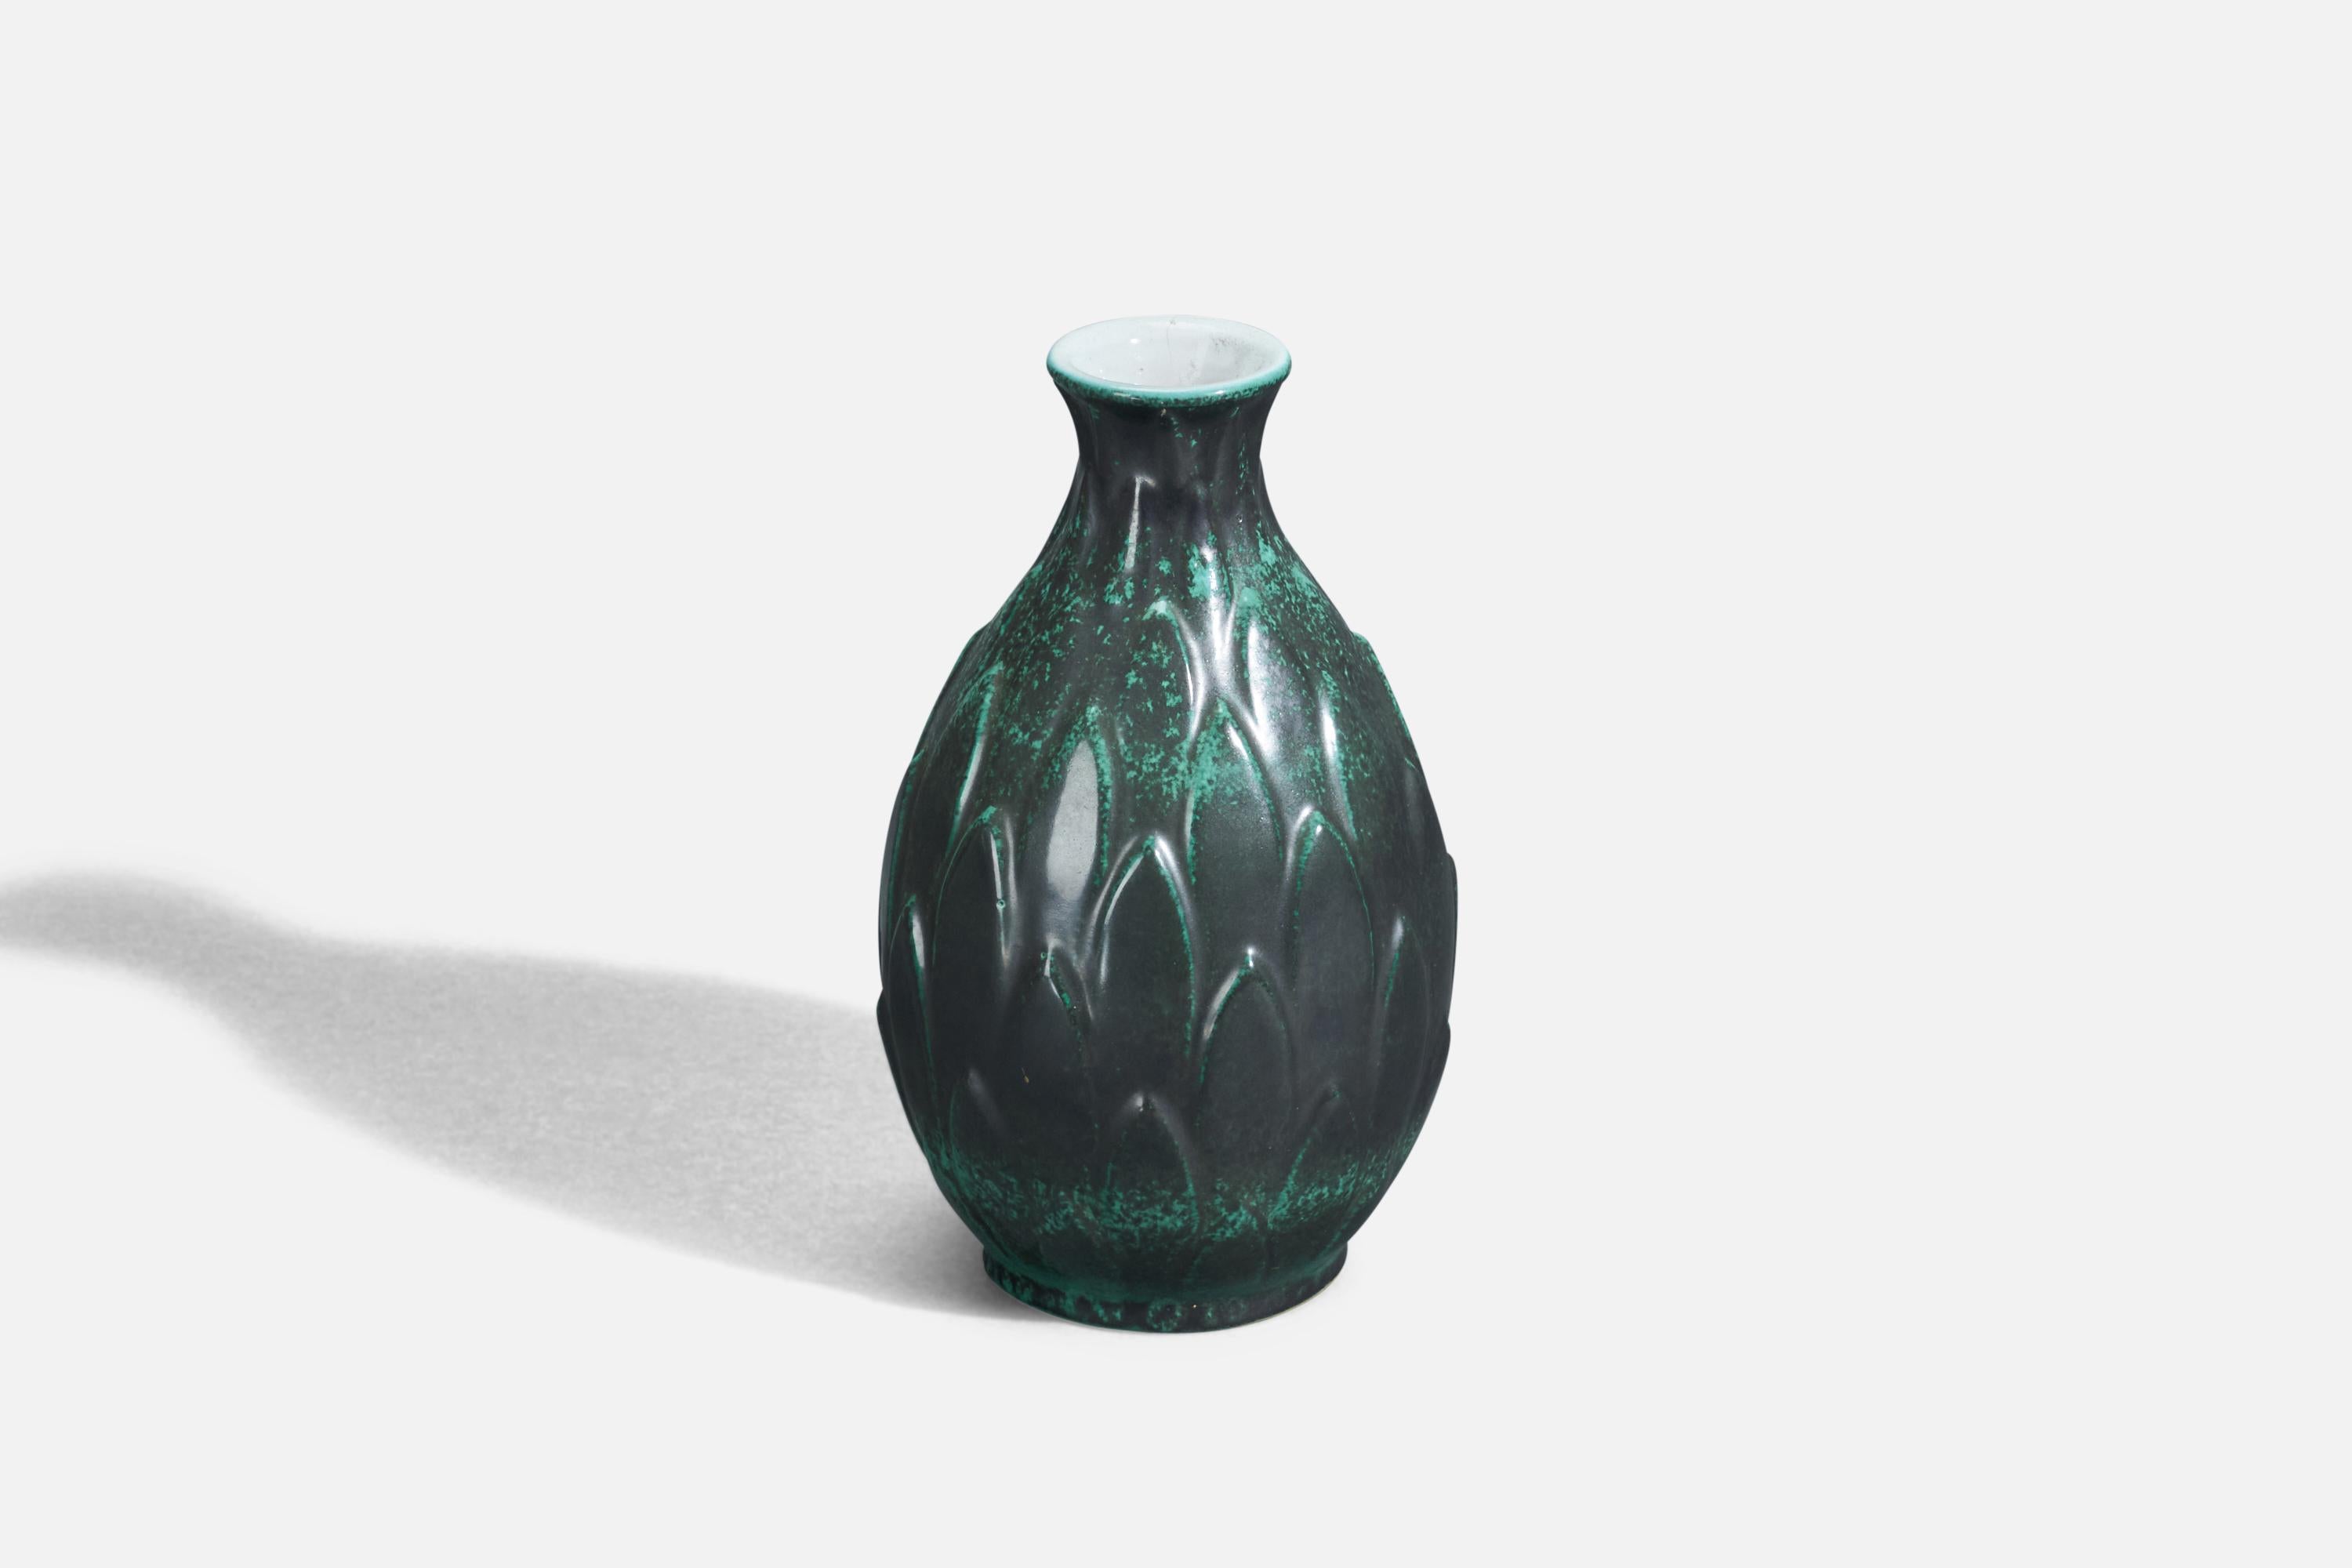 Scandinavian Modern Michael Andersen, Vase, Green Glazed Stoneware, Bornholm, Denmark, 1960s For Sale